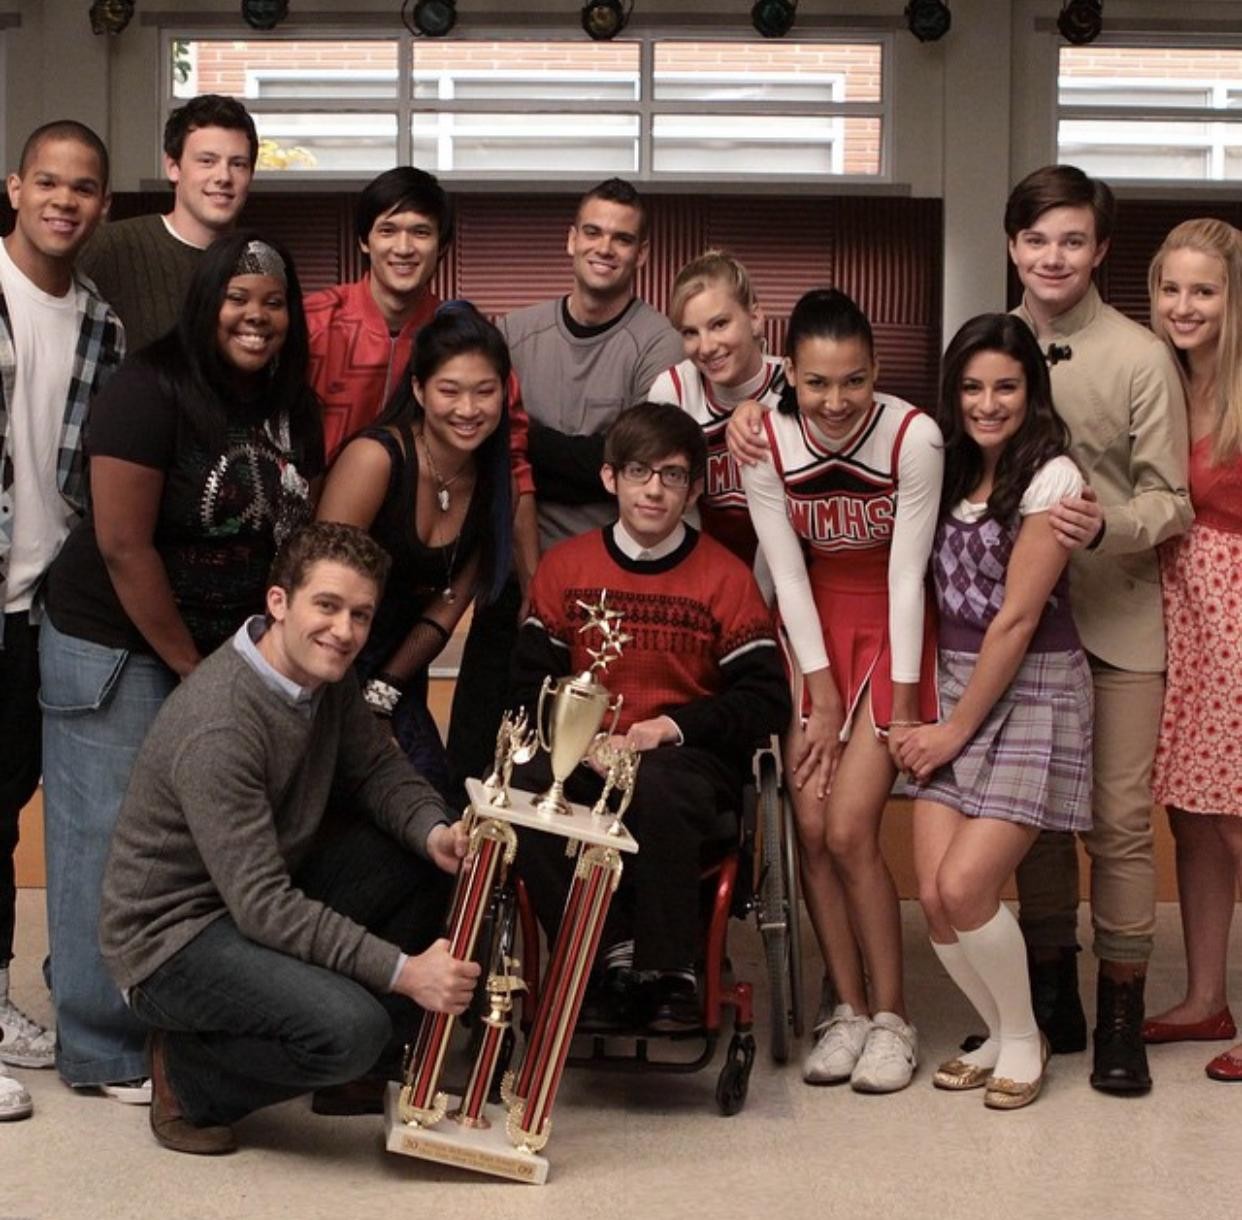 Elenco da série 'Glee' em 2009 (Foto: Reprodução/Instagram)